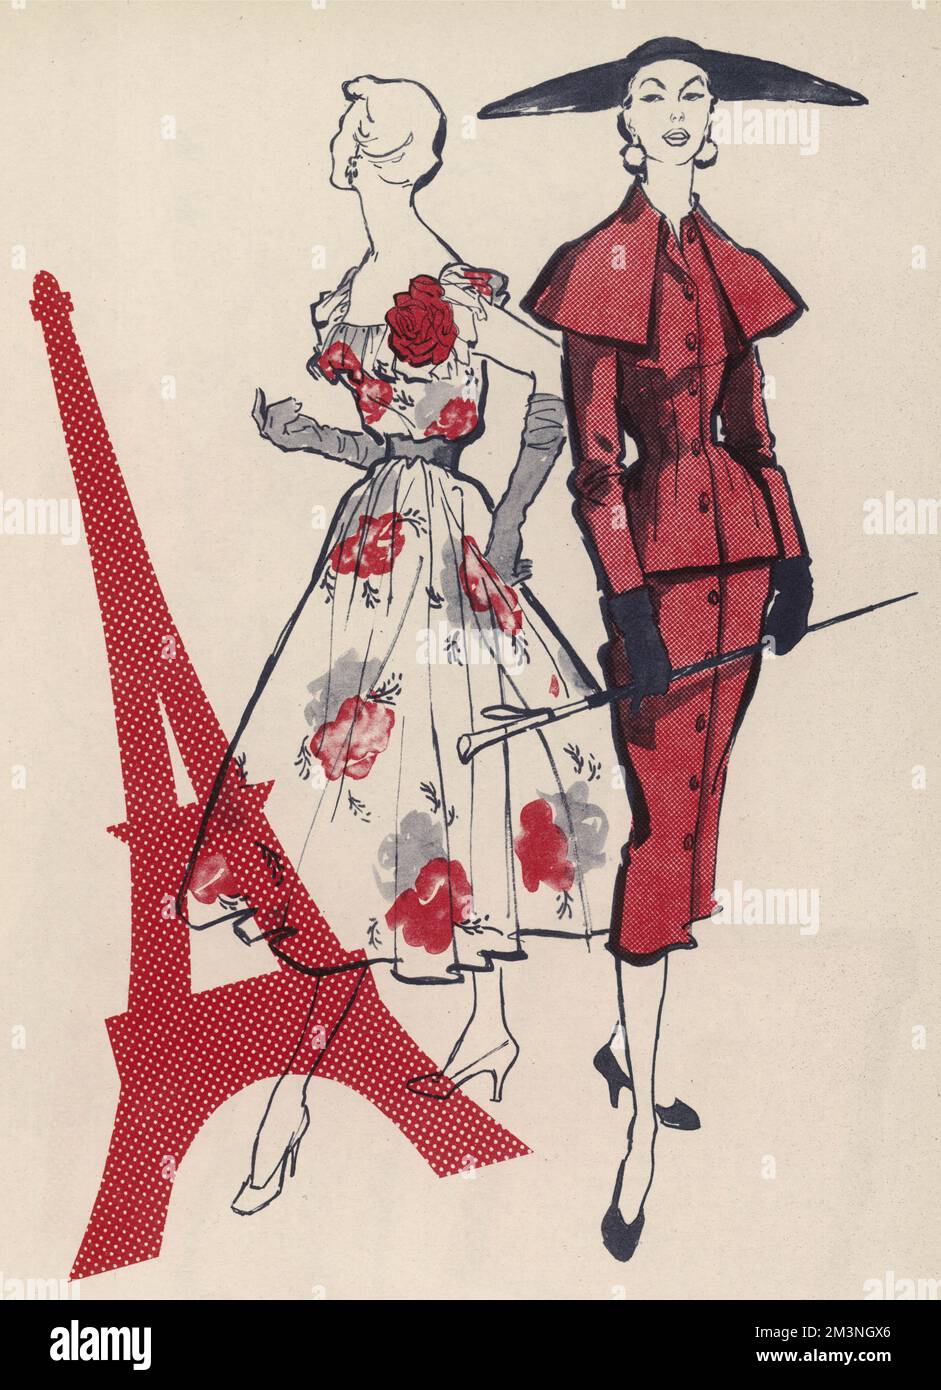 Ein Kleid in diaphanösem, blumigen Chiffon mit einer 3D Rose an der Schulter und einem Ledergürtel an der Taille von Christian Dior. Auf der rechten Seite befindet sich die ausgeprägte Silhouette eines Tweed-Anzugs von Fath mit vertikaler Knopflinie und Umhang, die ihm zusätzlichen Schwung verleihen. Datum: 1954 Stockfoto